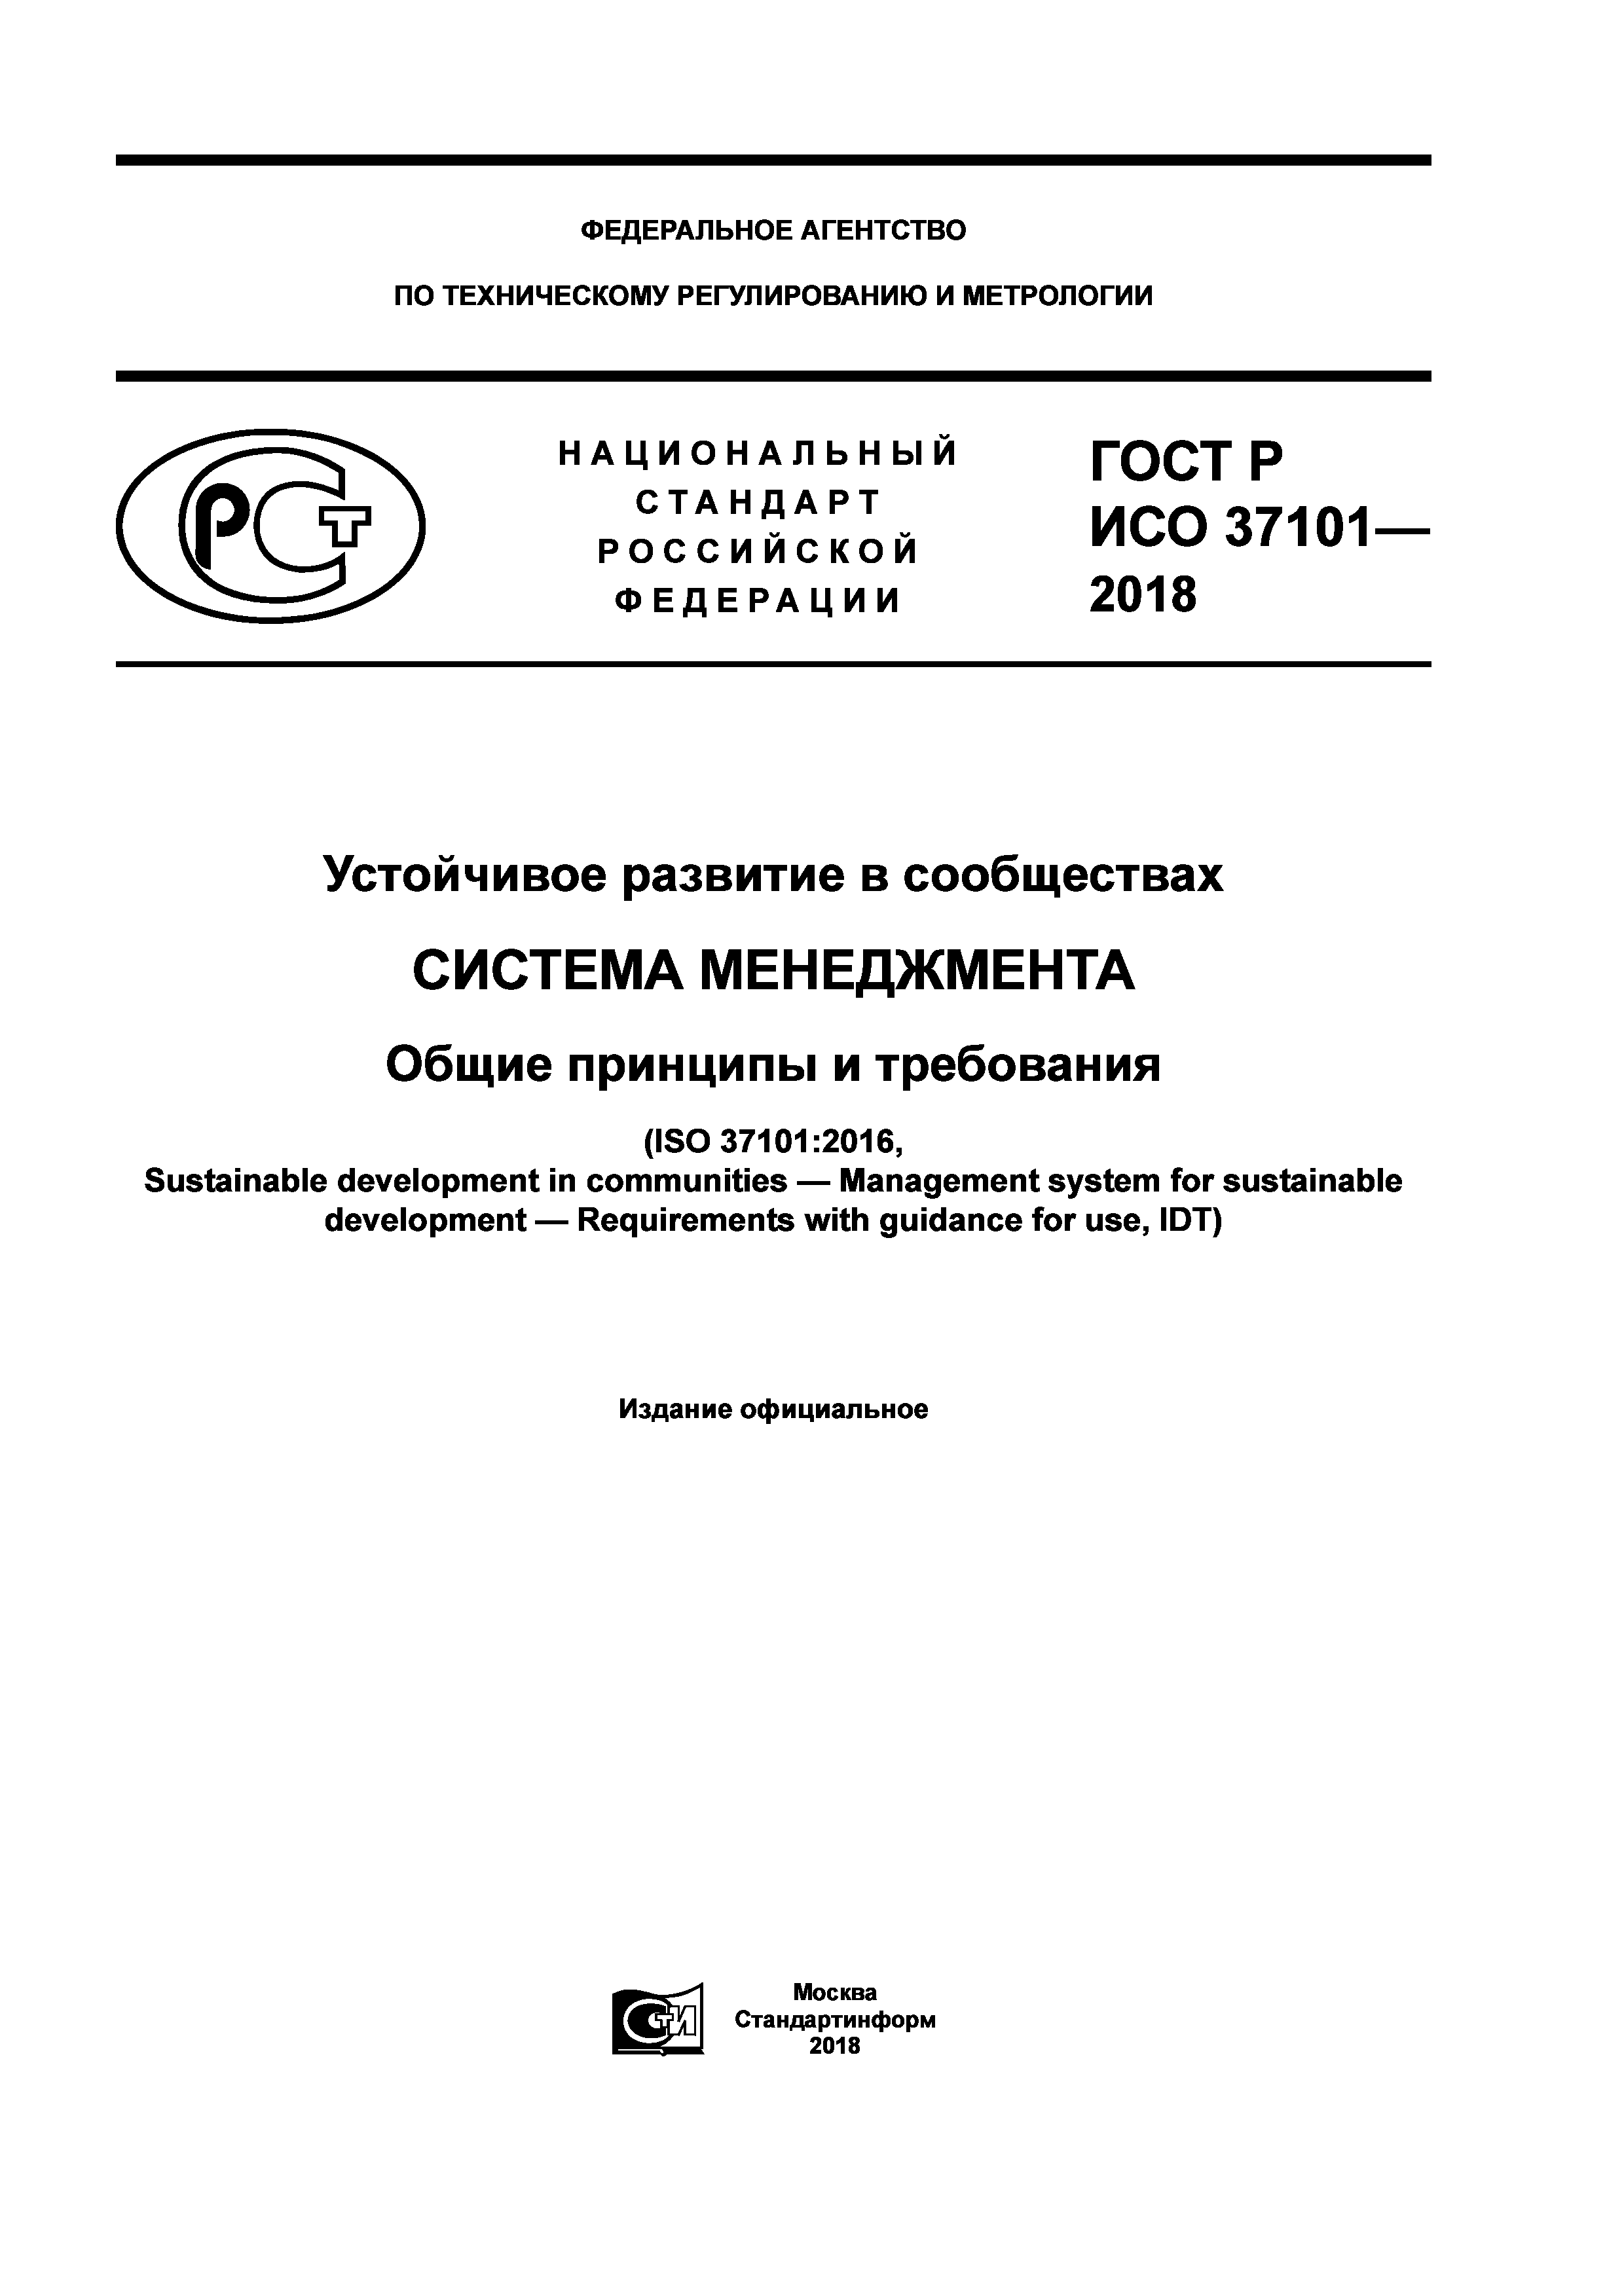 ГОСТ Р ИСО 37101-2018